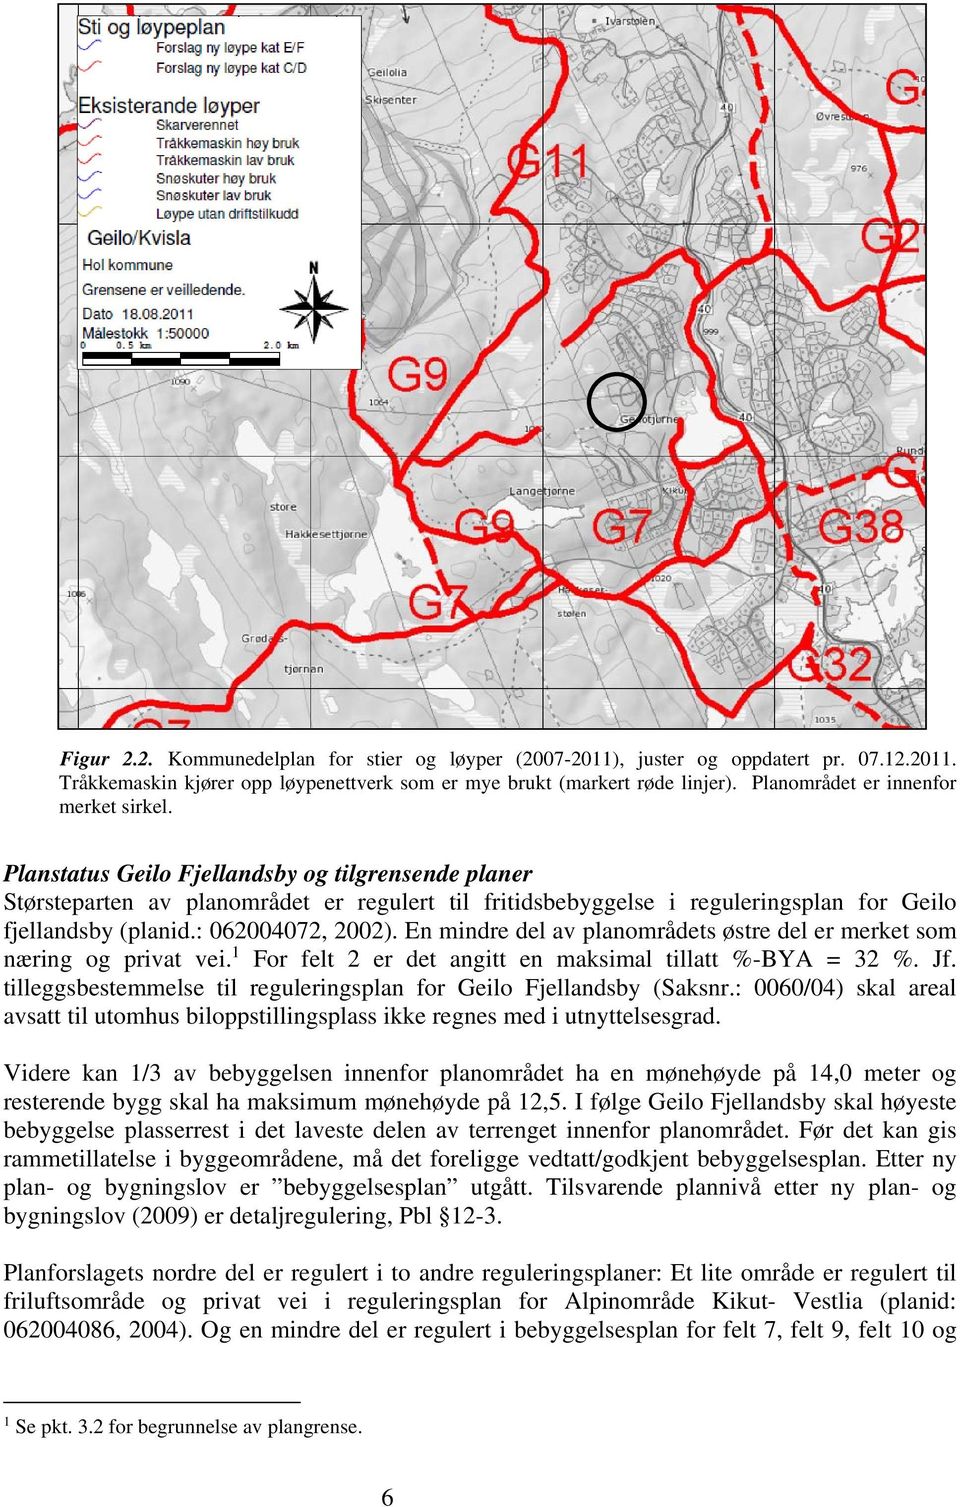 Planstatus Geilo Fjellandsby og tilgrensende planer Størsteparten av planområdet er regulert til fritidsbebyggelse i reguleringsplan for Geilo fjellandsby (planid.: 062004072, 2002).